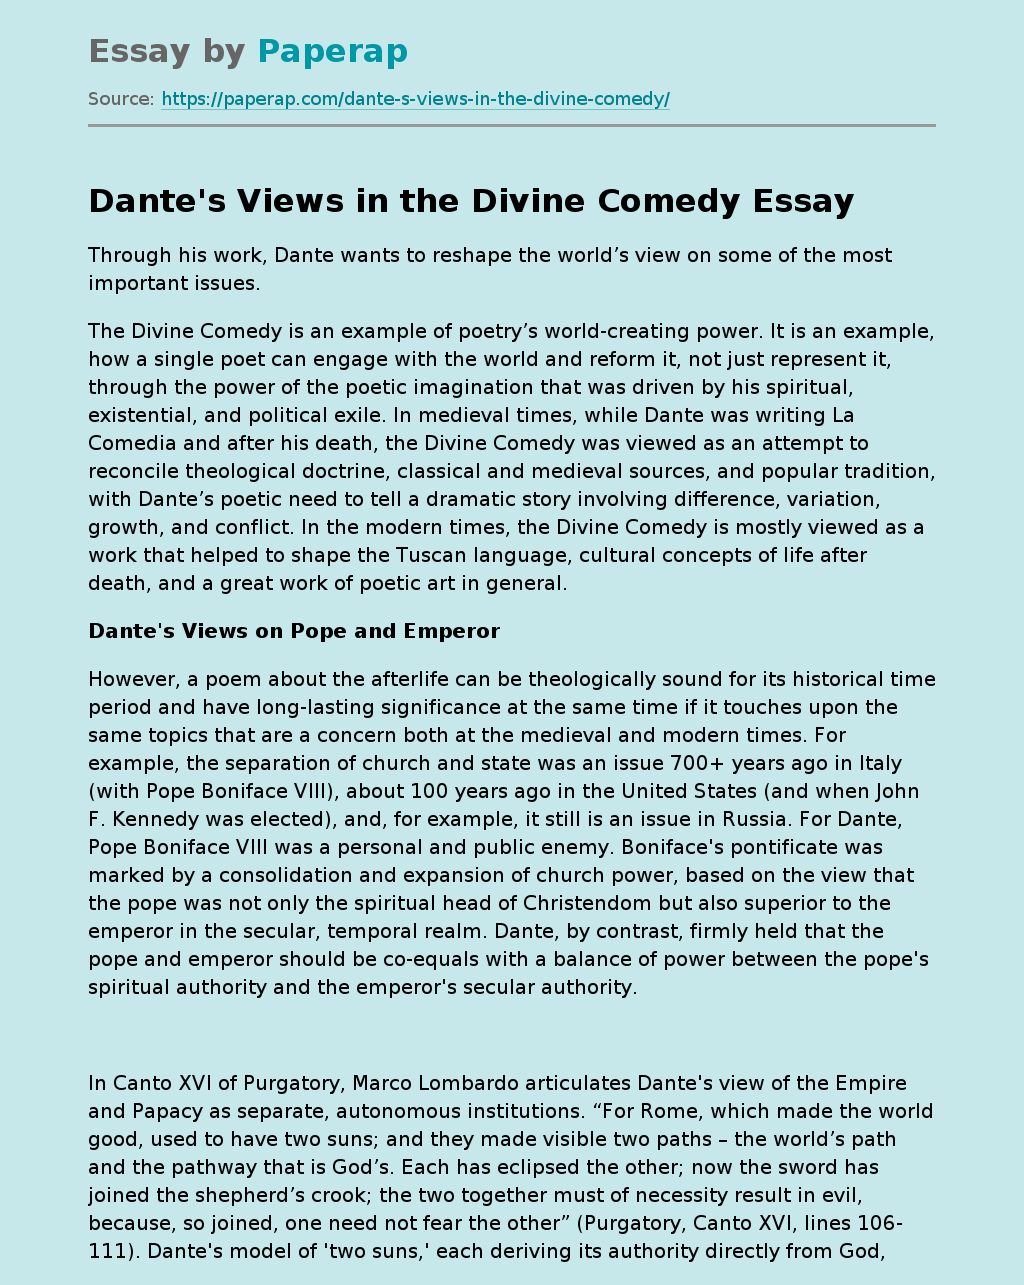 Dante's Views in the Divine Comedy